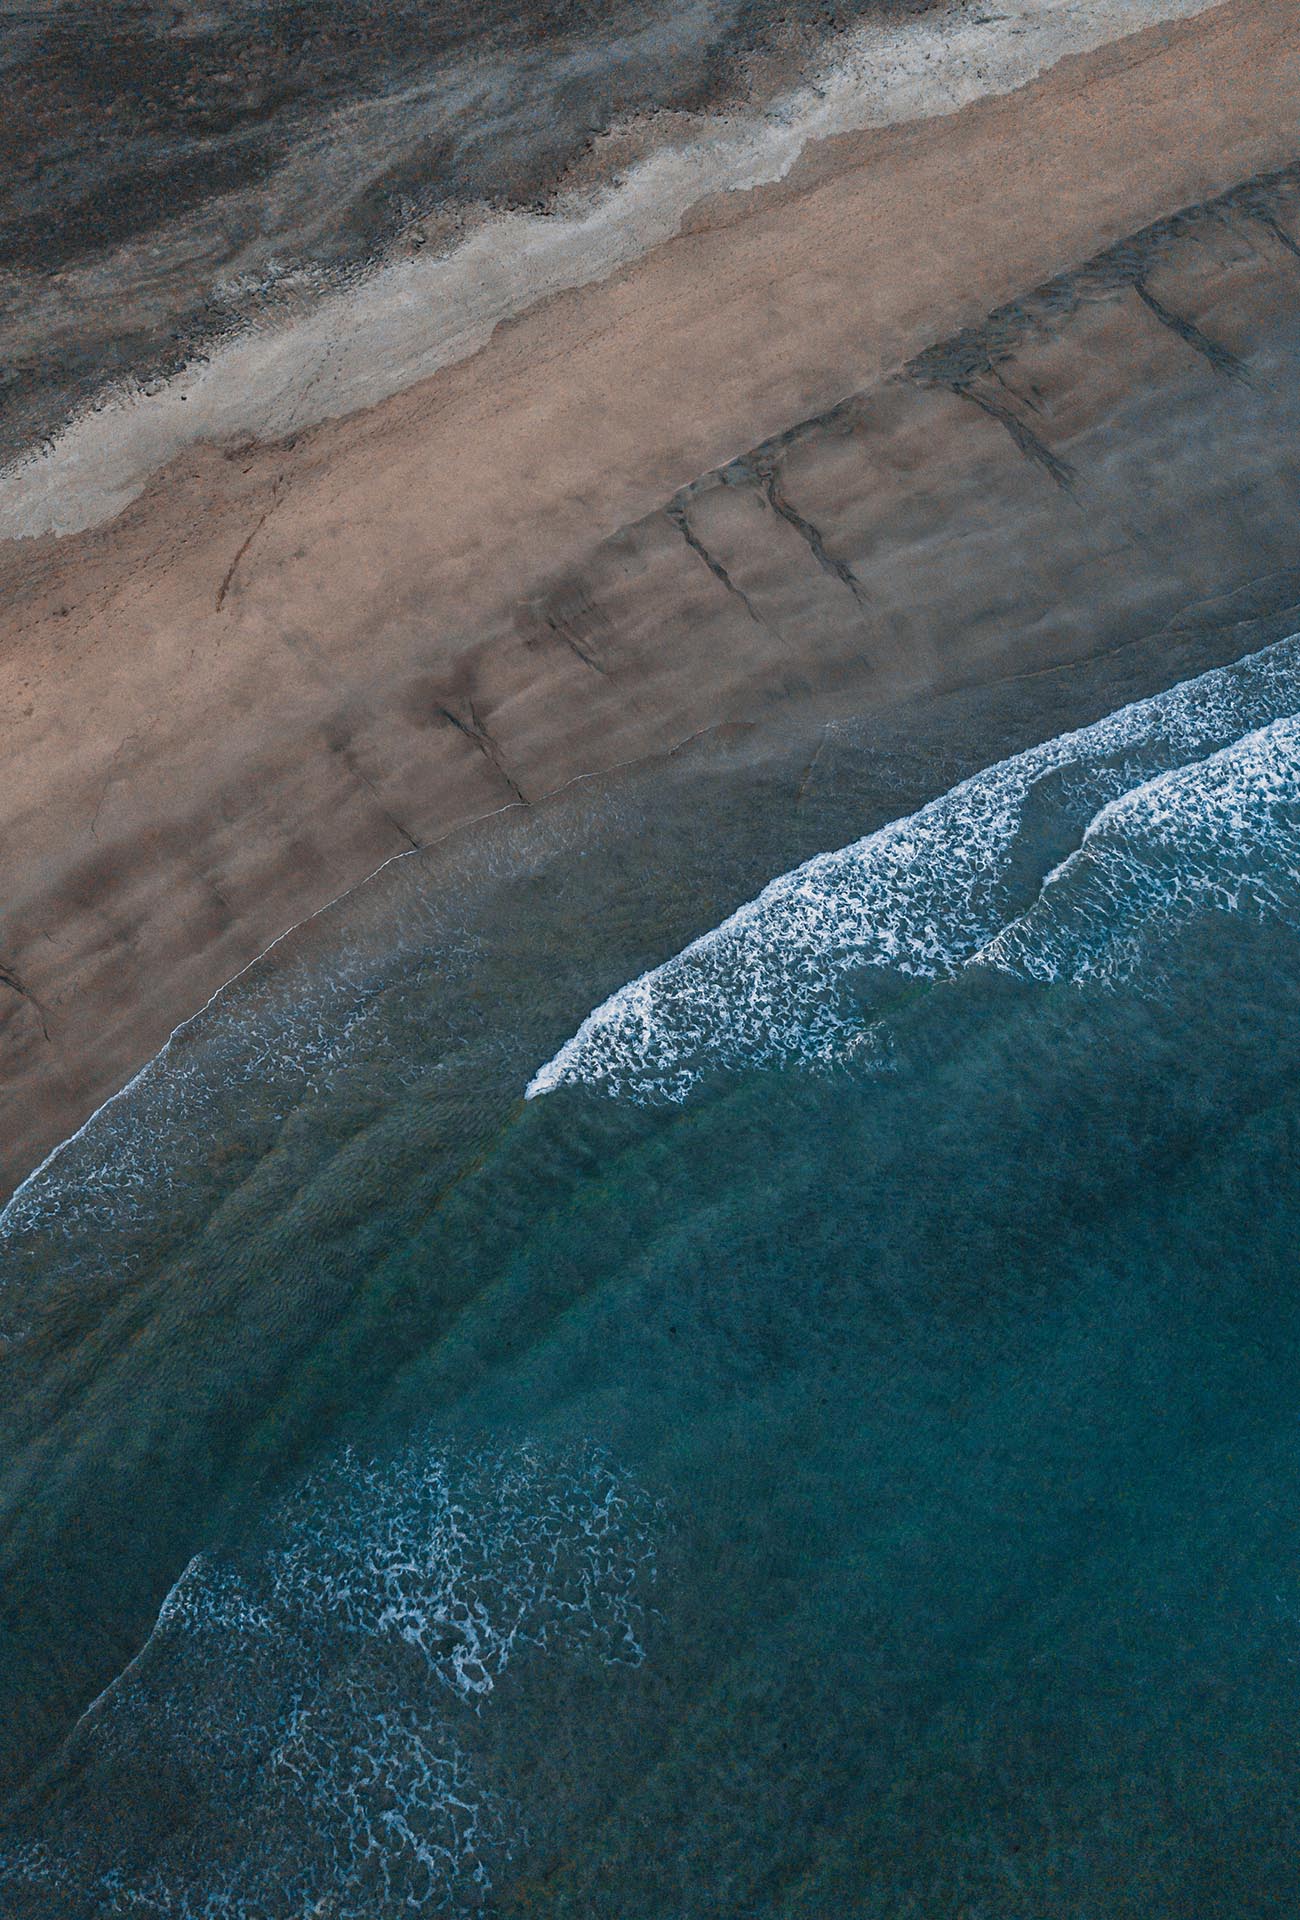 Luftbild von einem Strand, mit weißen Schaumkronen auf den Wellen.